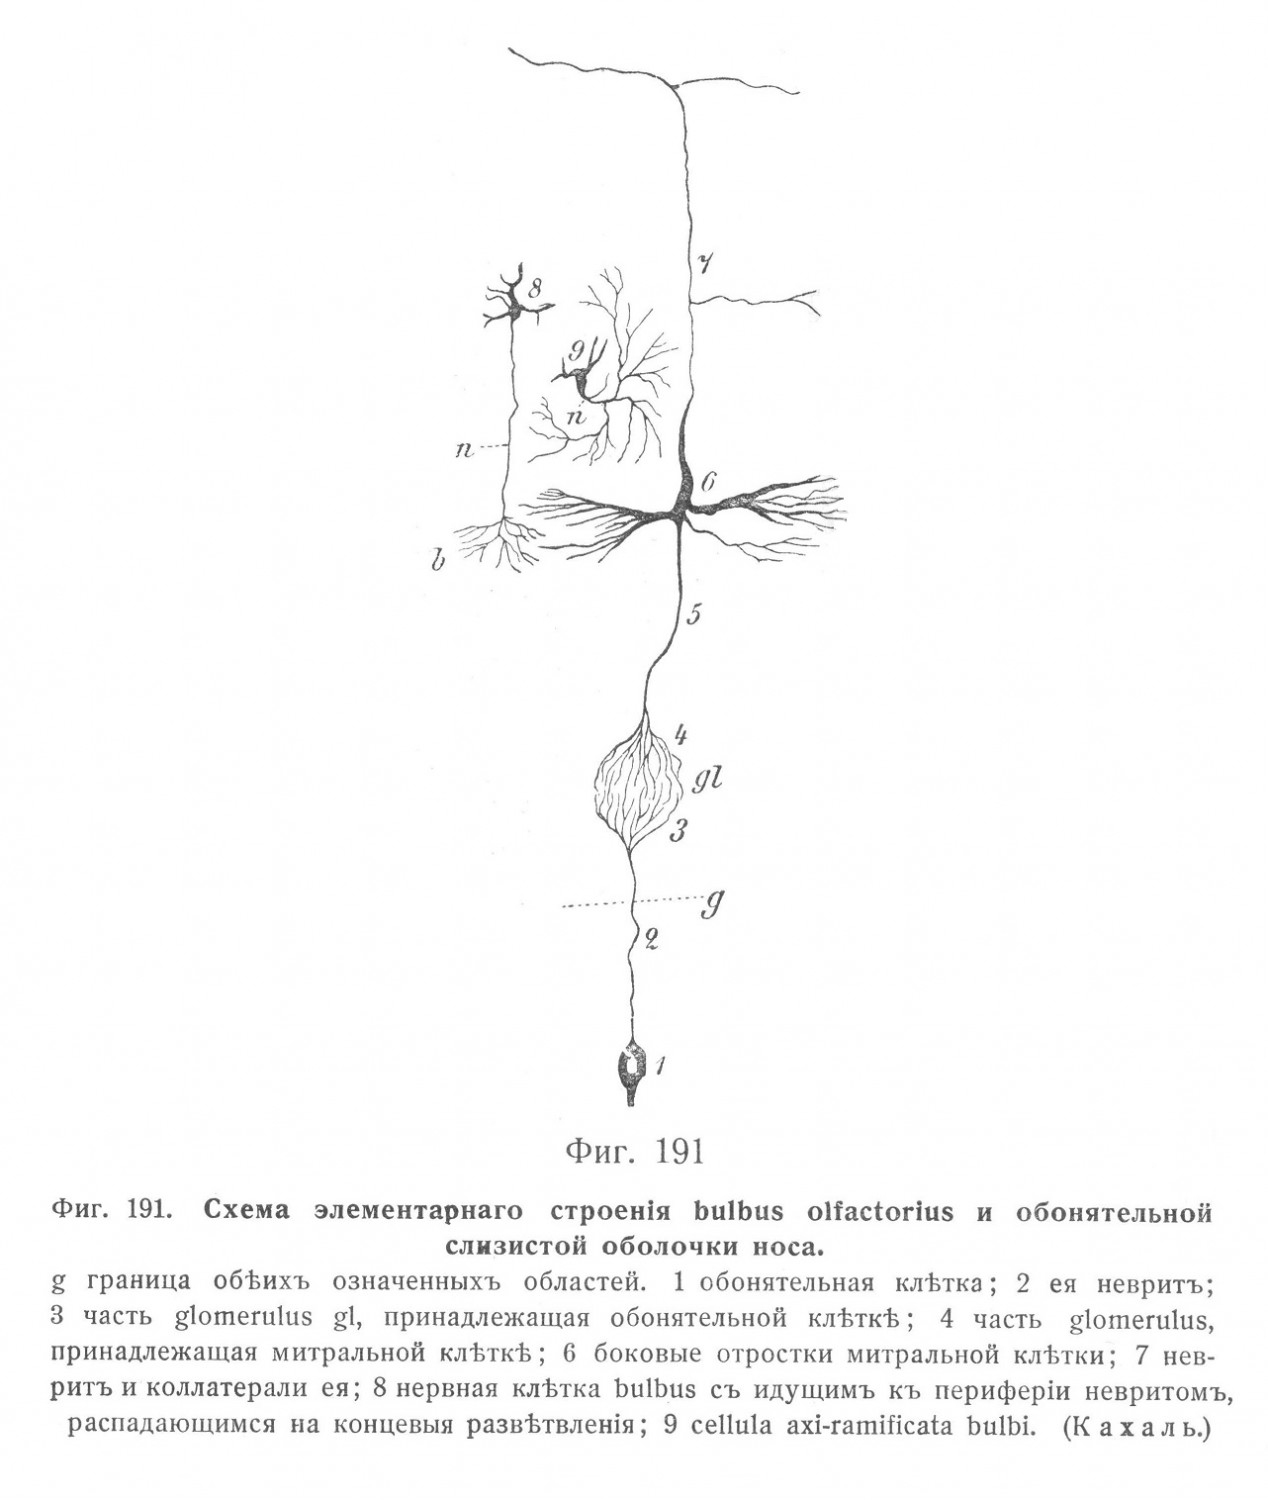 Схема элементарного строения bulbus olfactorius